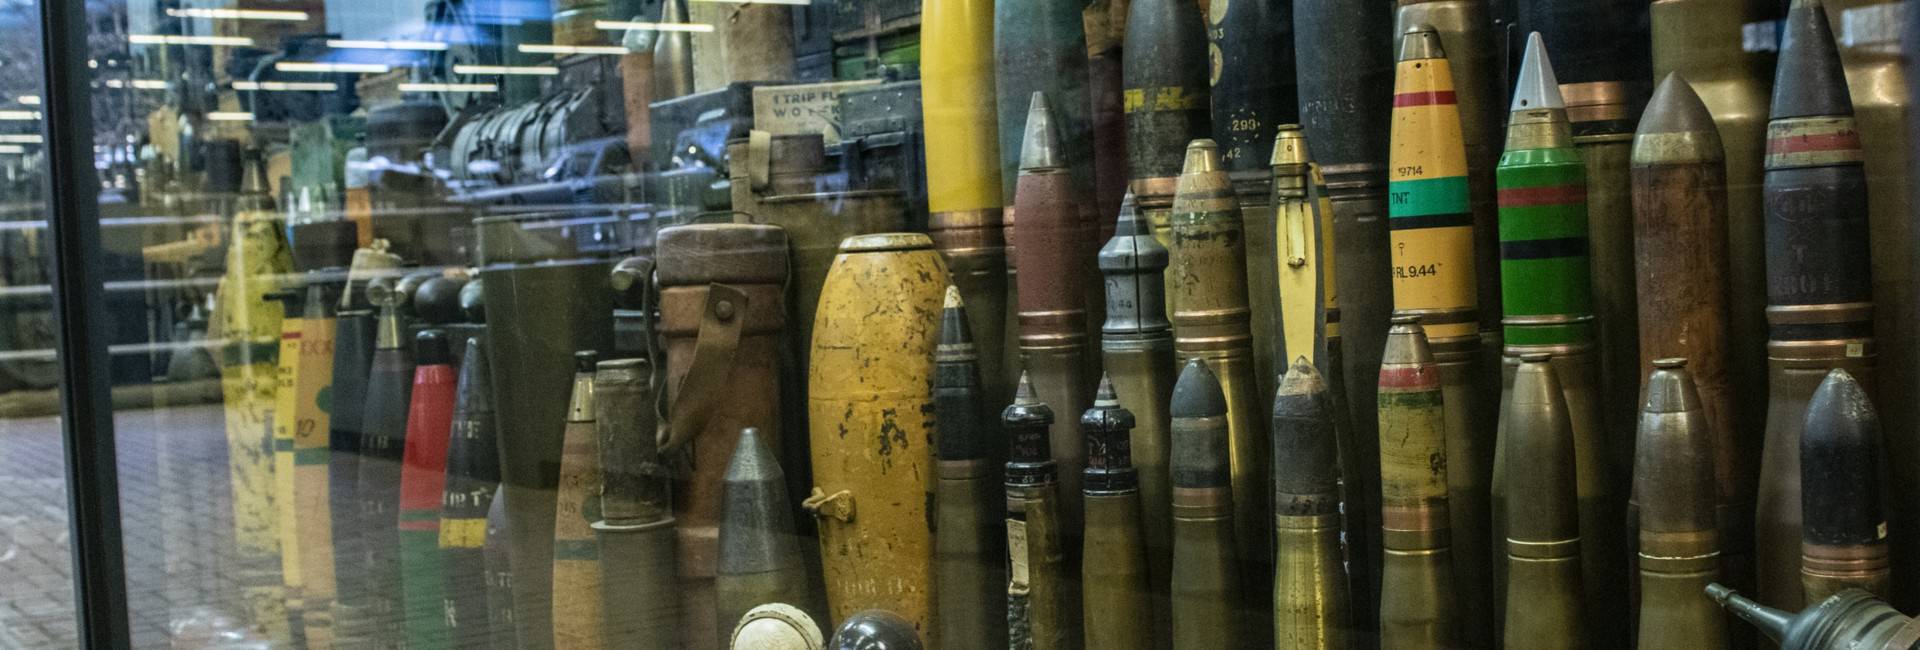 oorlogsmuseum - 1000 bommen en granaten